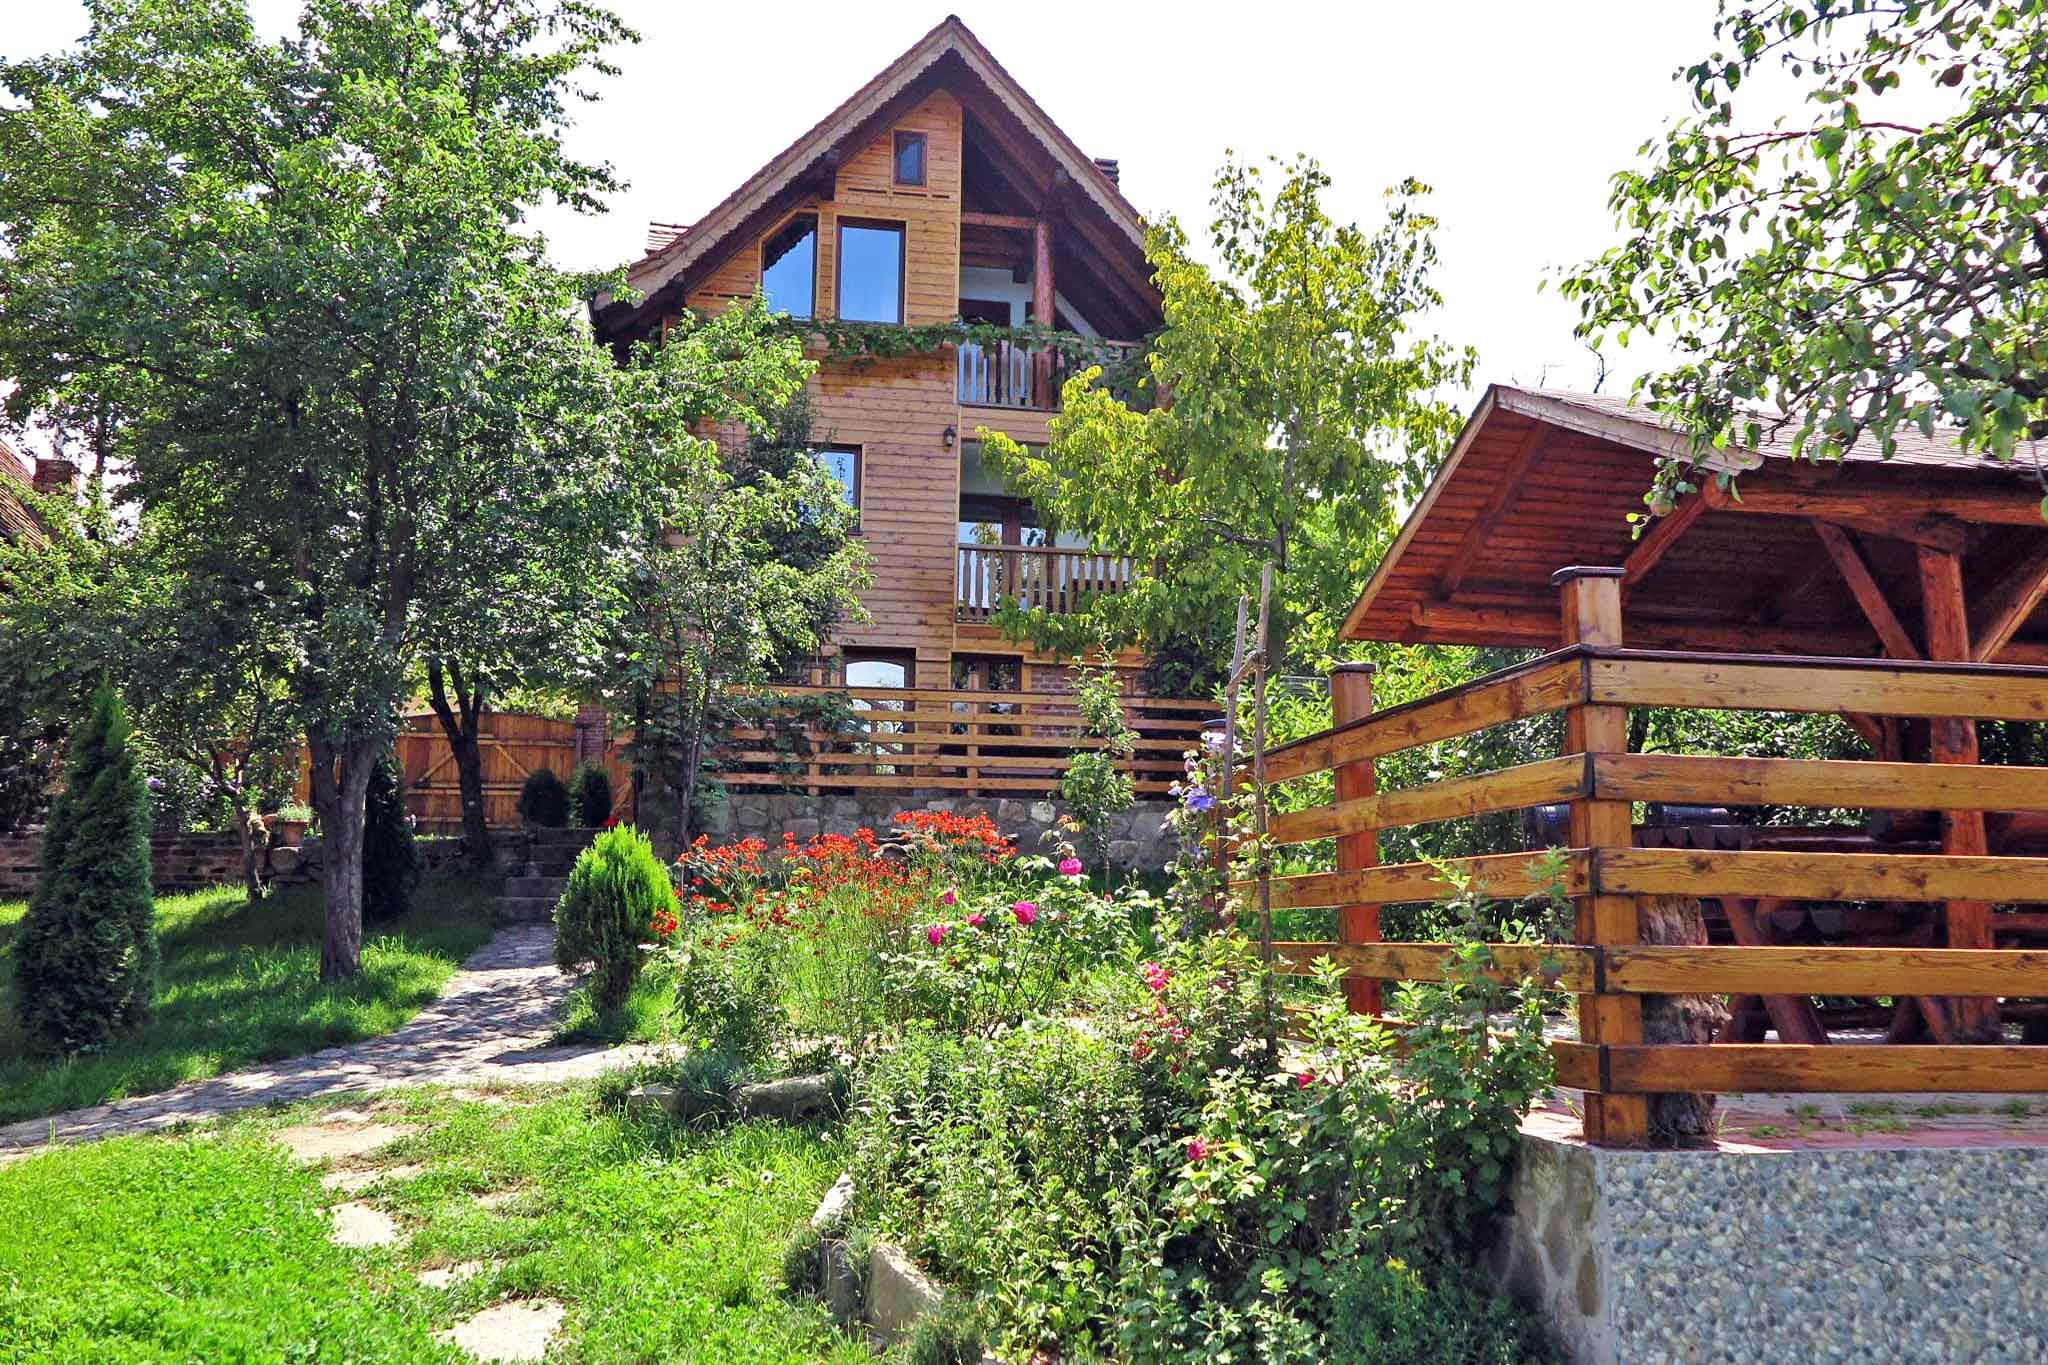 Casa Zollo 2 Ferienwohnung mit Panoramablick in Hirtendorf am Fusse der Karpaten Transsilvaniens